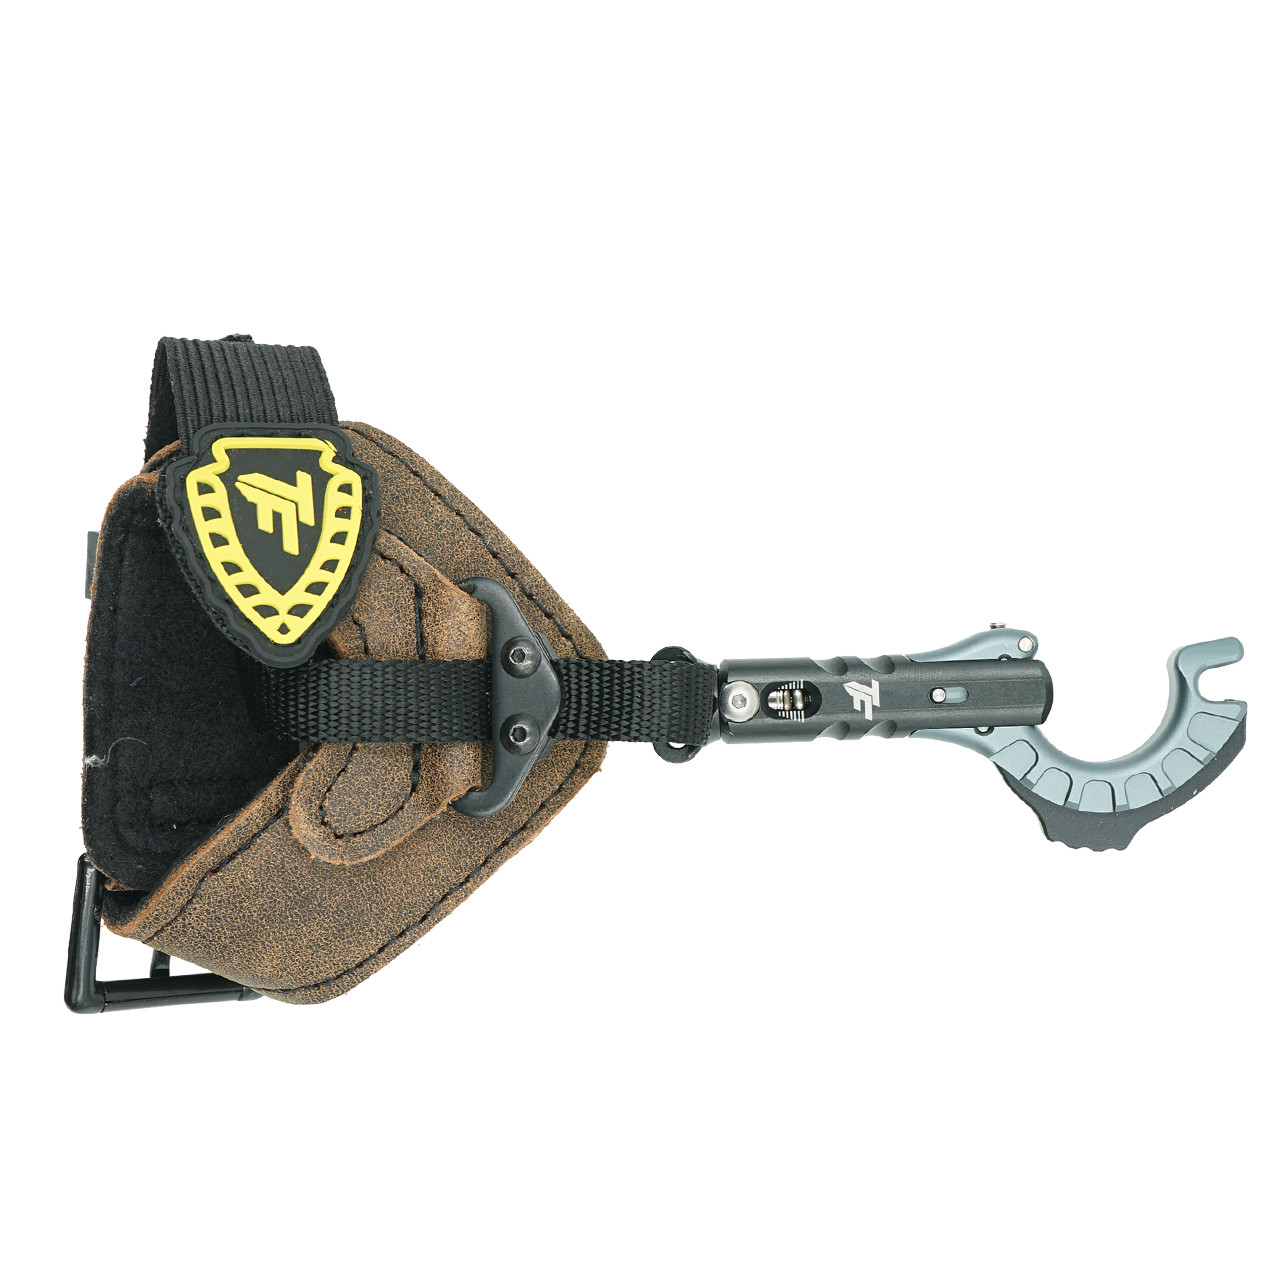 New Tru-Fire Patriot Release w/ Buckle Strap Archery Bow Release 